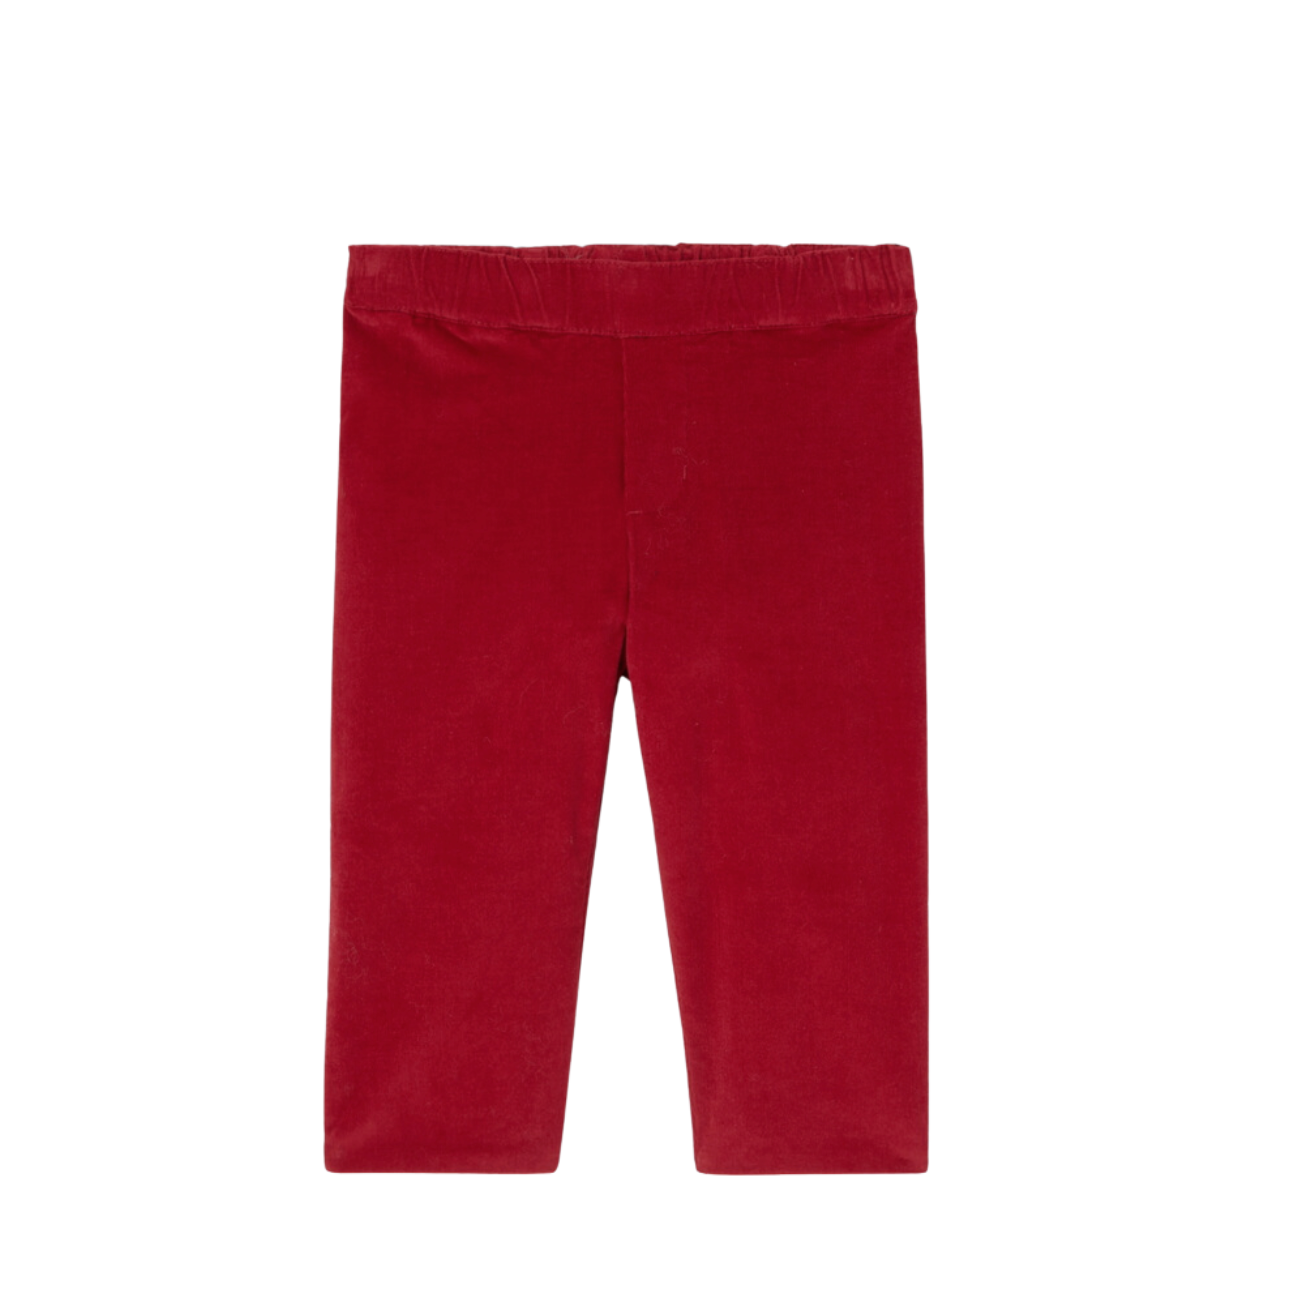 JACADI - Pantalon en velours rouge - 2 ans